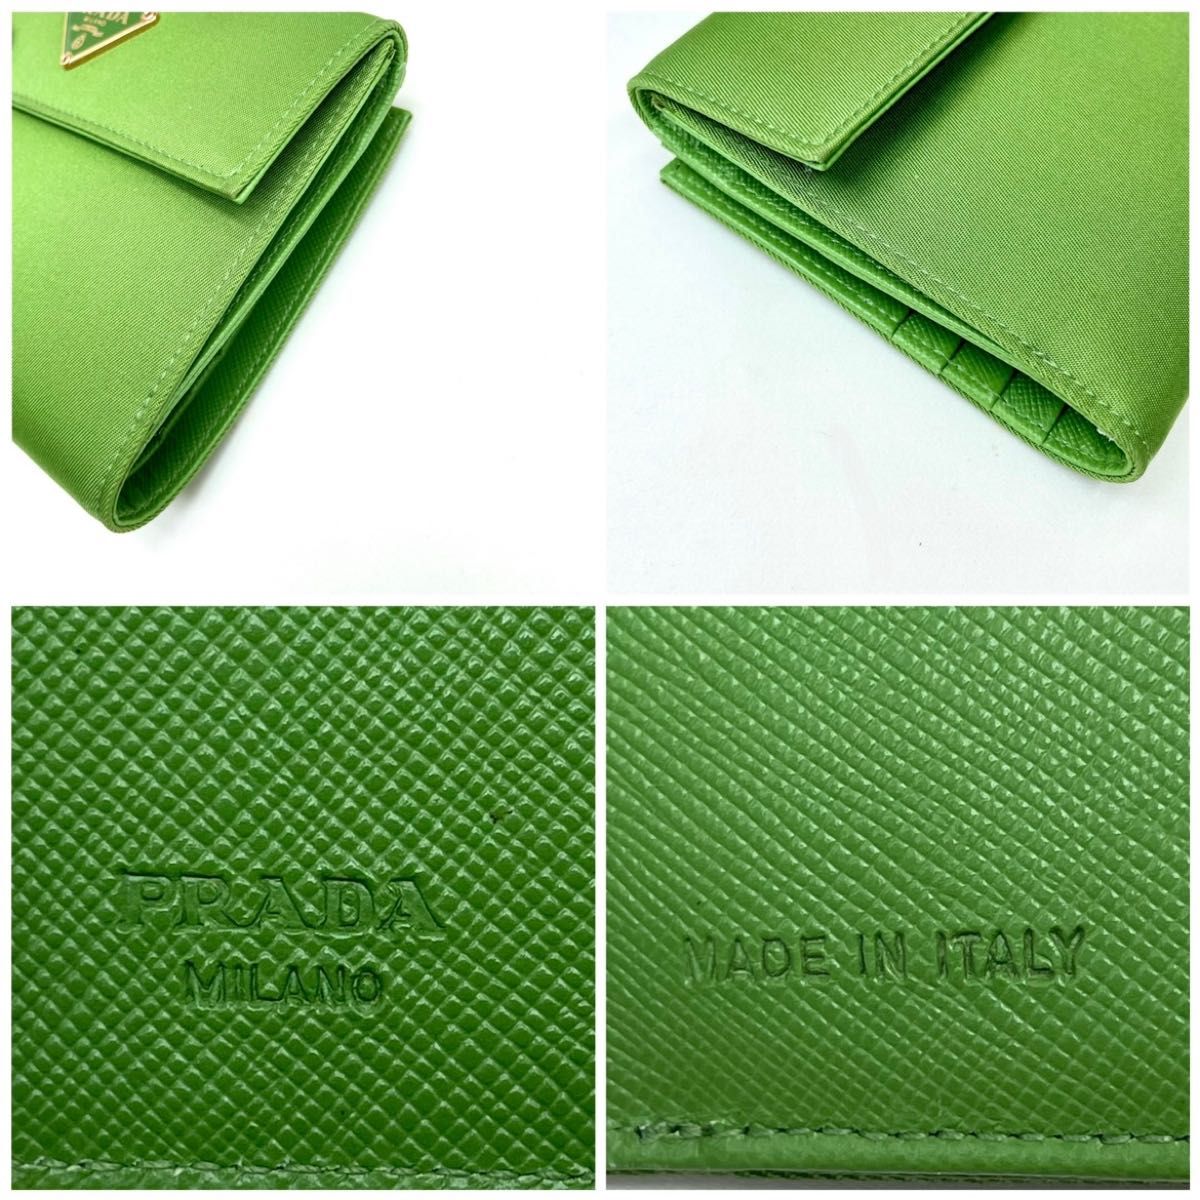 プラダ 財布 新品未使用 ナイロン サフィアーノ 三角ロゴプレート 緑